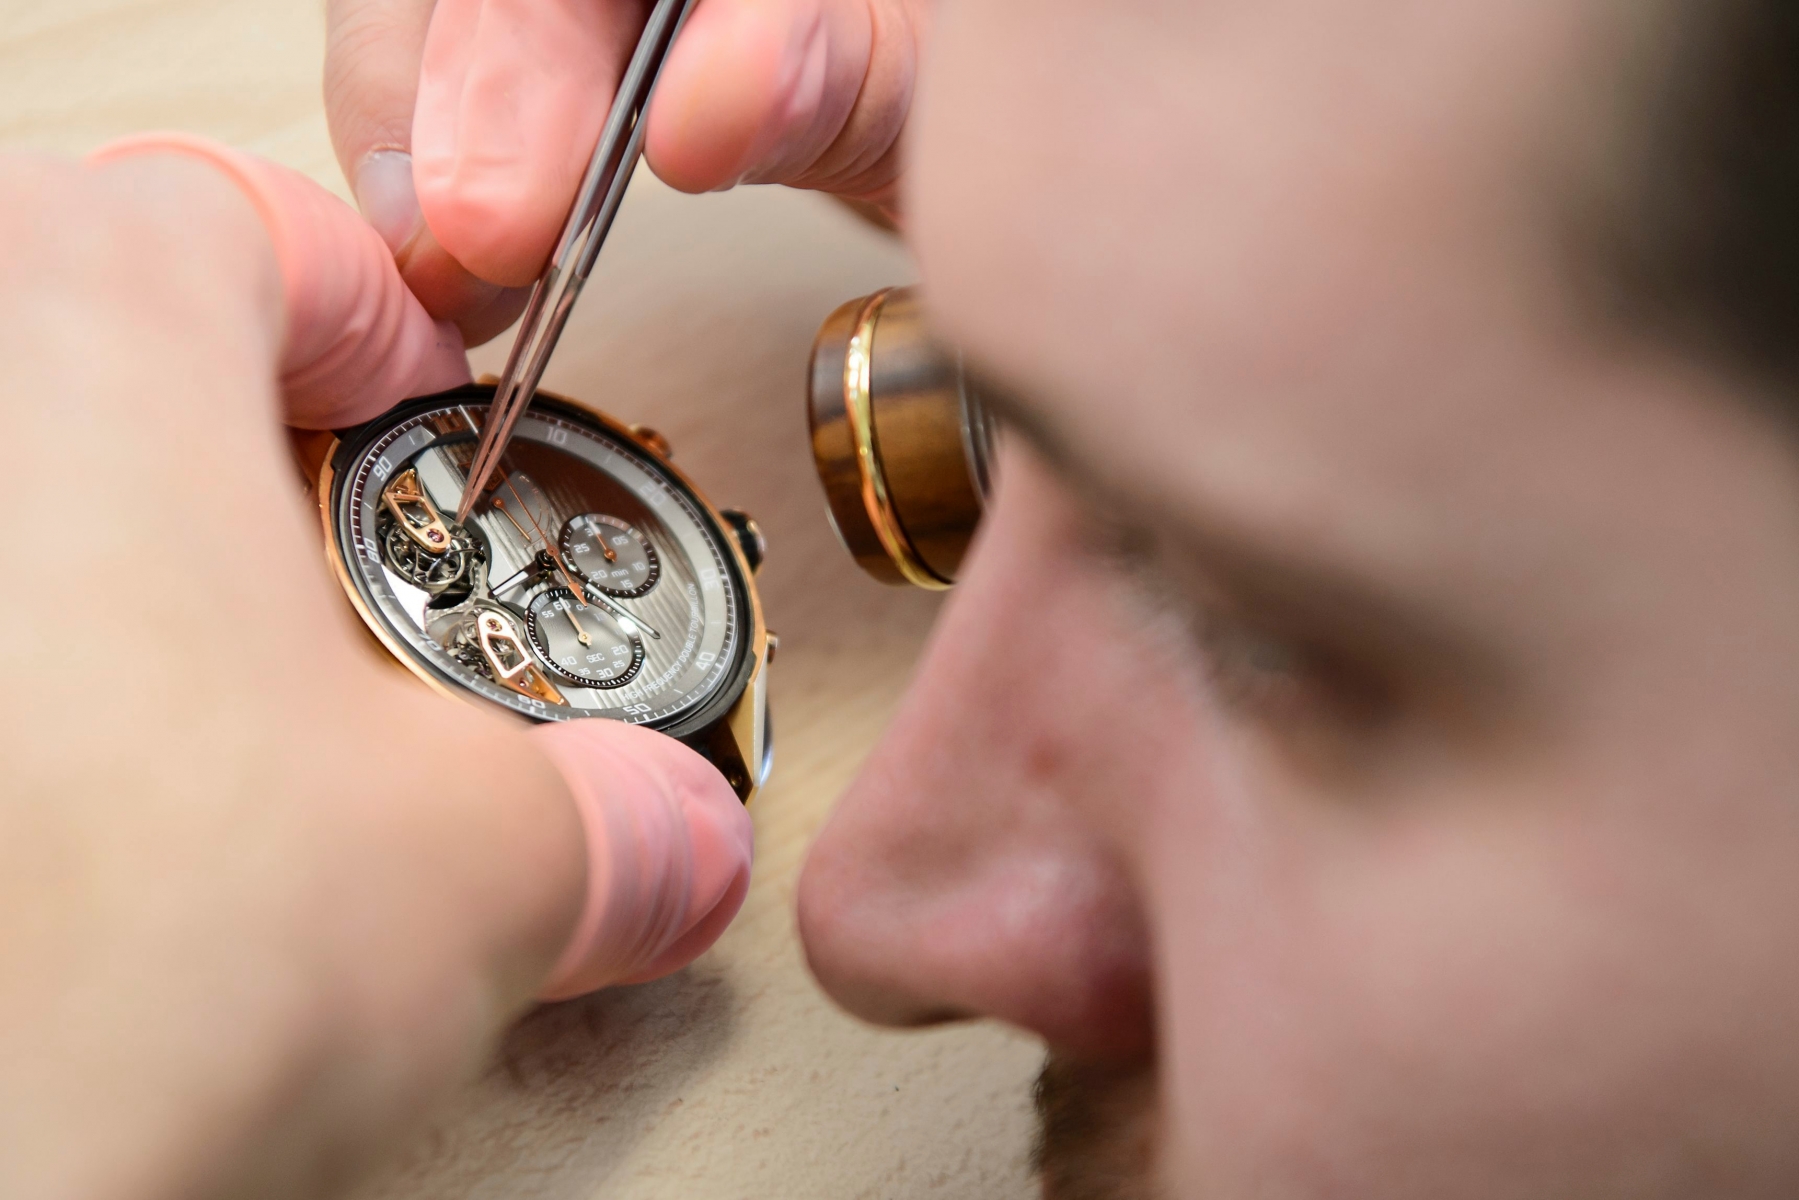 Un employe travail sur la confection d'une montre de Haute Horlogerie au siege de la marque horlogere Tag Heuer ce jeudi 3 decembre 2015 a La Chaux-de-Fonds. (KEYSTONE/Jean-Christophe Bott) SUISSE TAG HEUER MONTRE